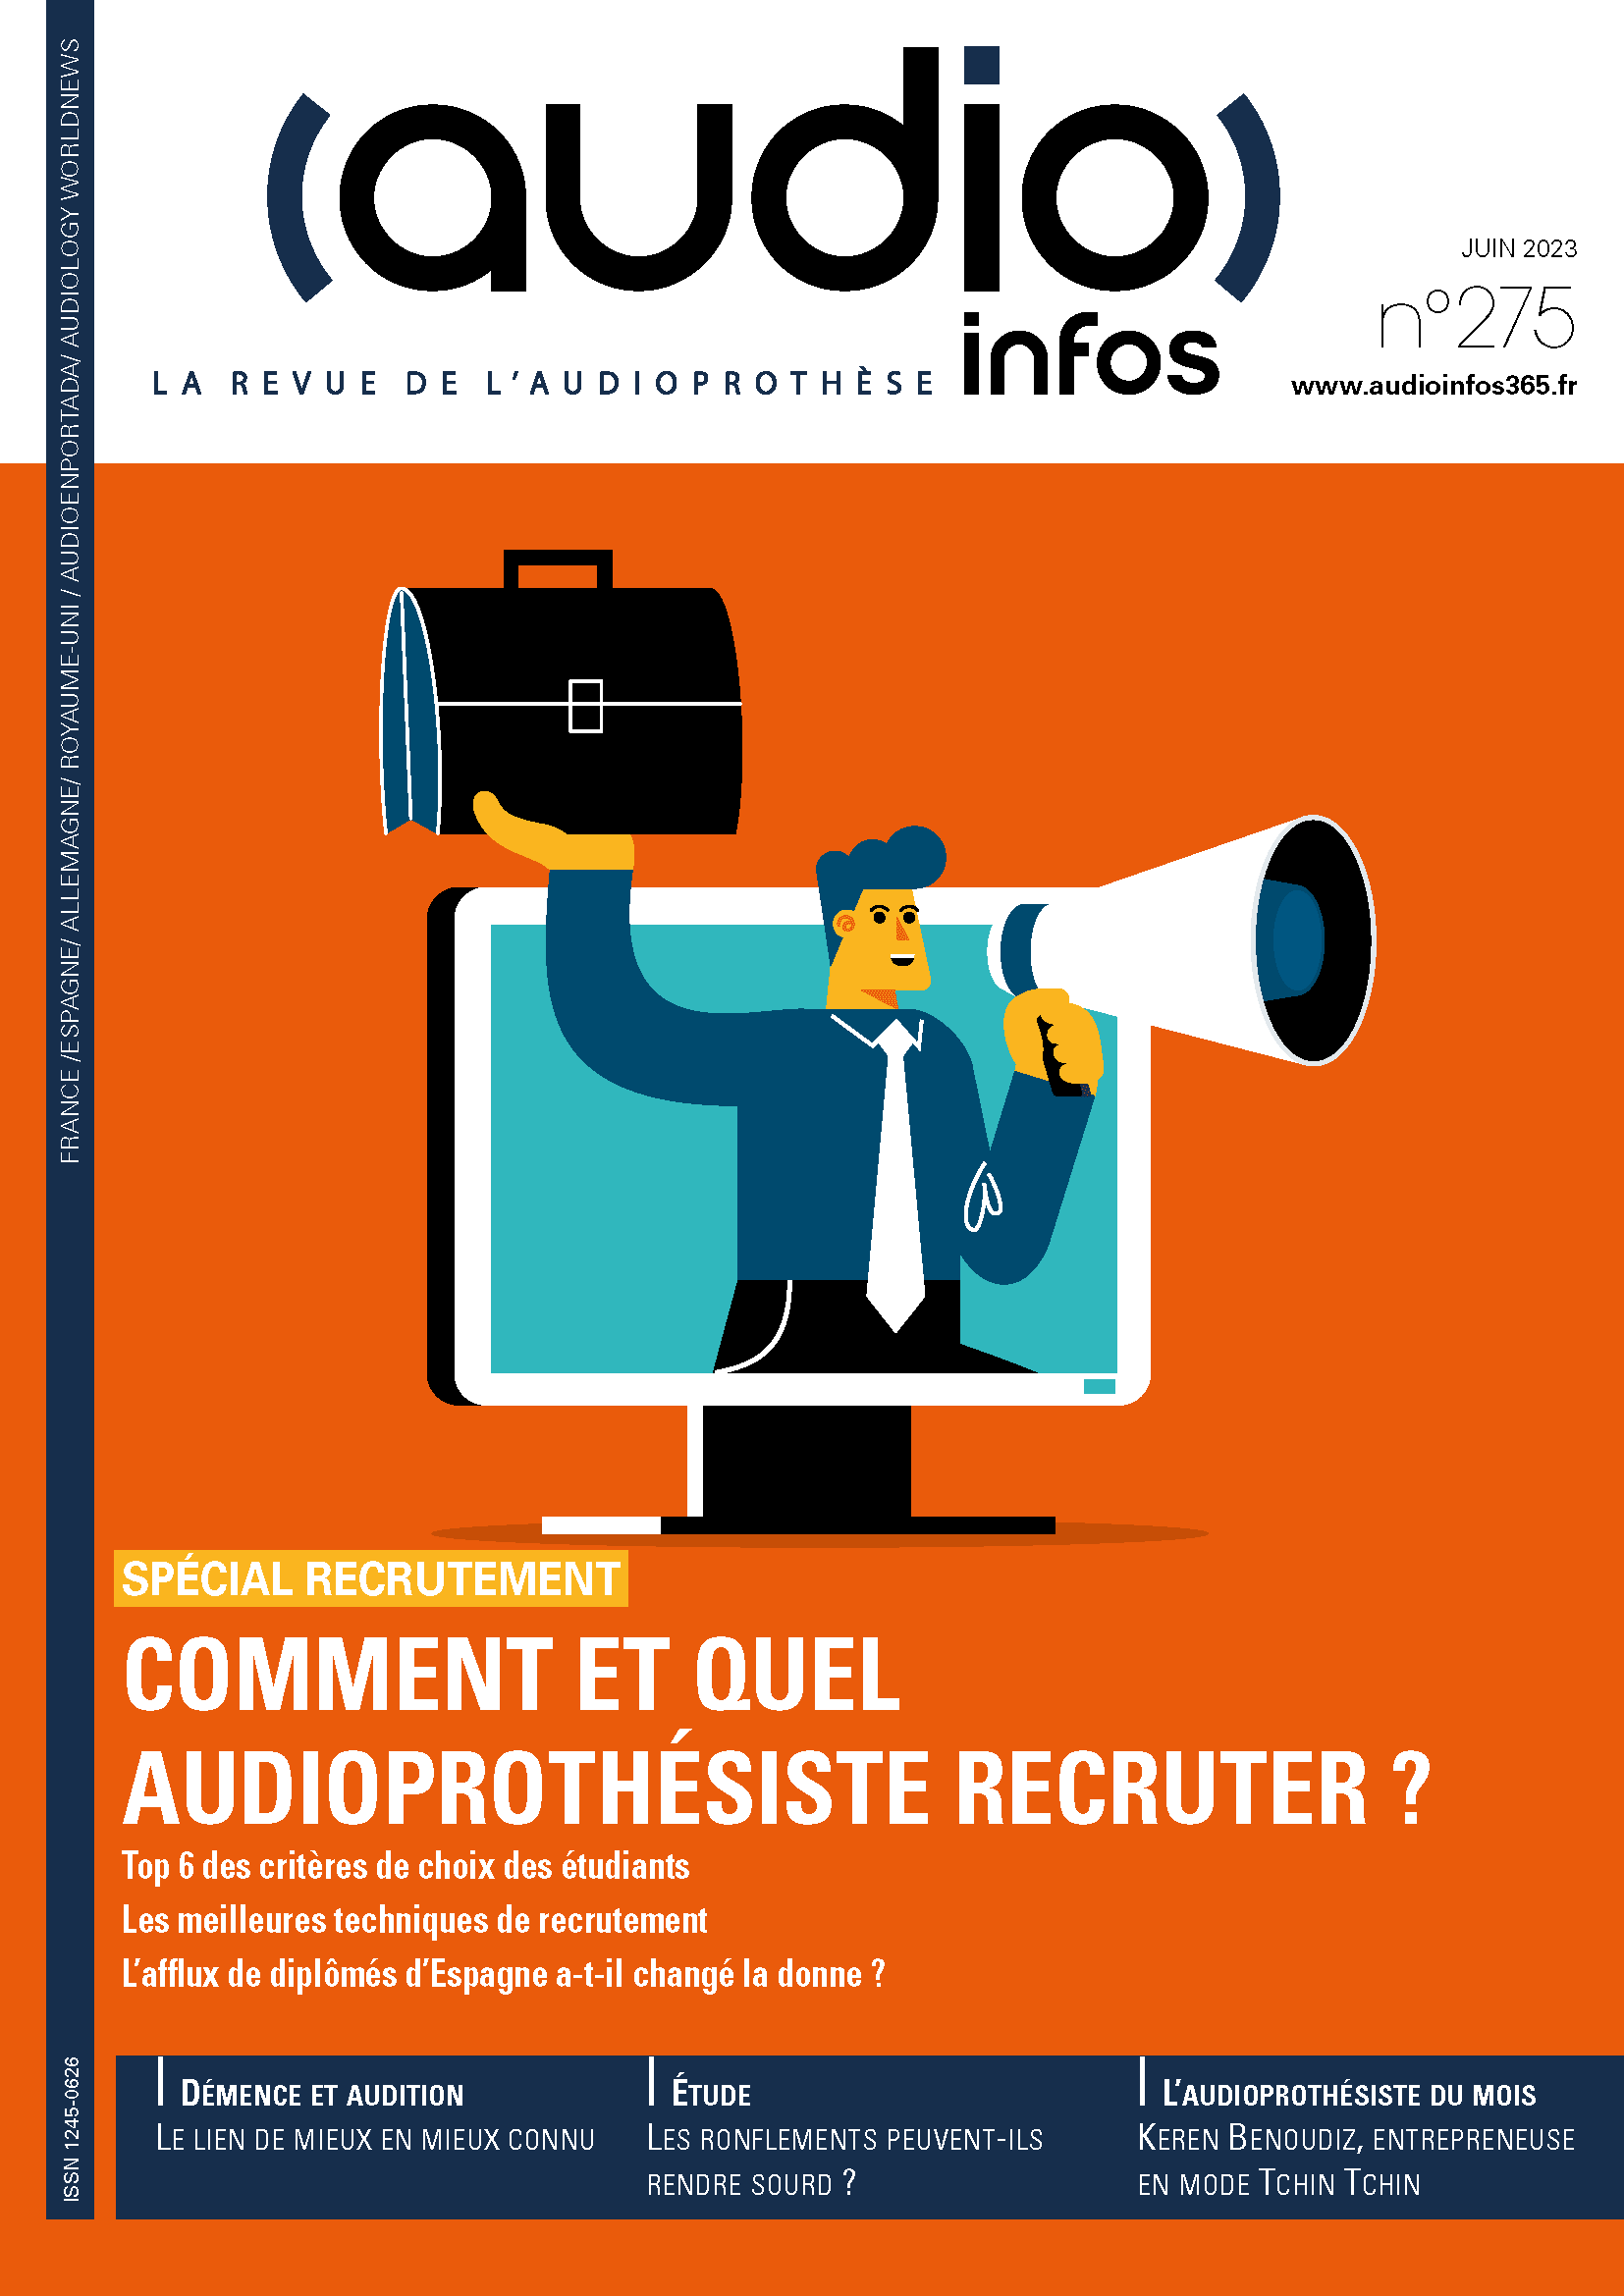 Couverture du magazine Audio infos France n°275 de juin 2023